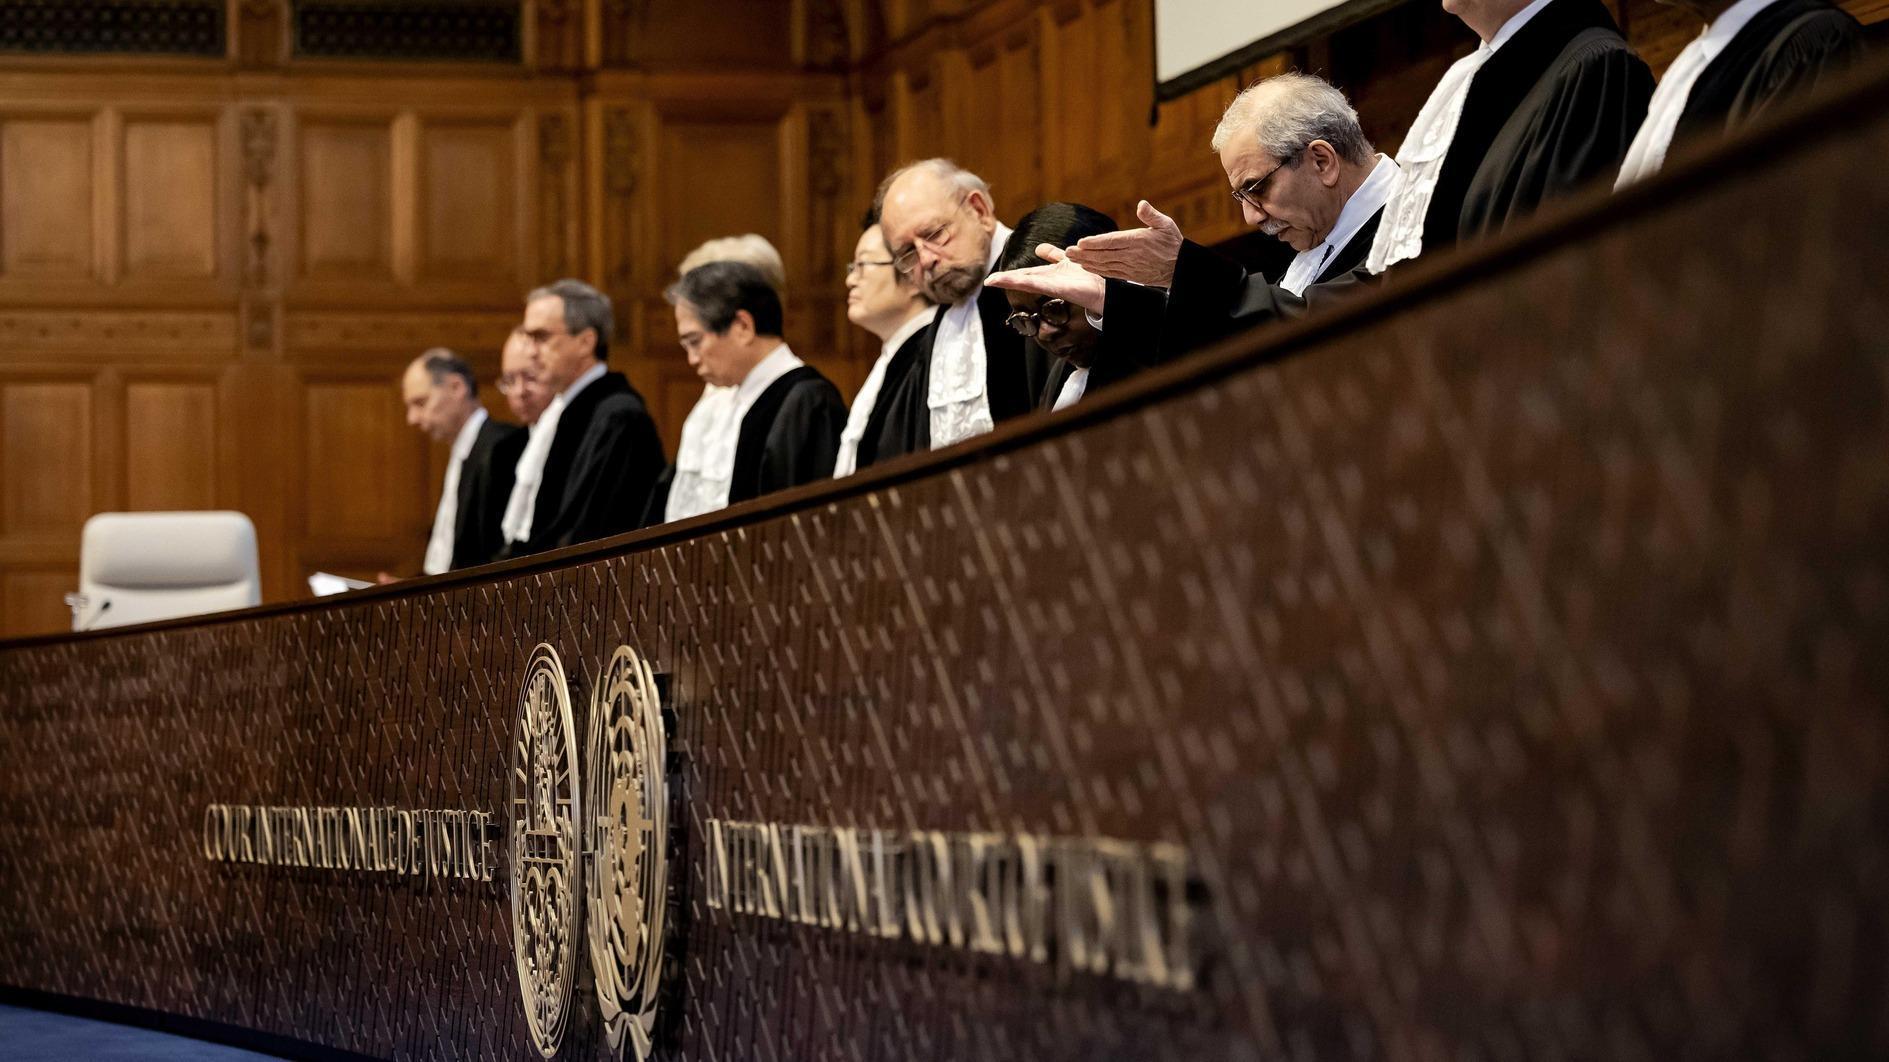 Türkiye zal bij het Internationaal Gerechtshof mondelinge argumenten presenteren over de acties van Israël